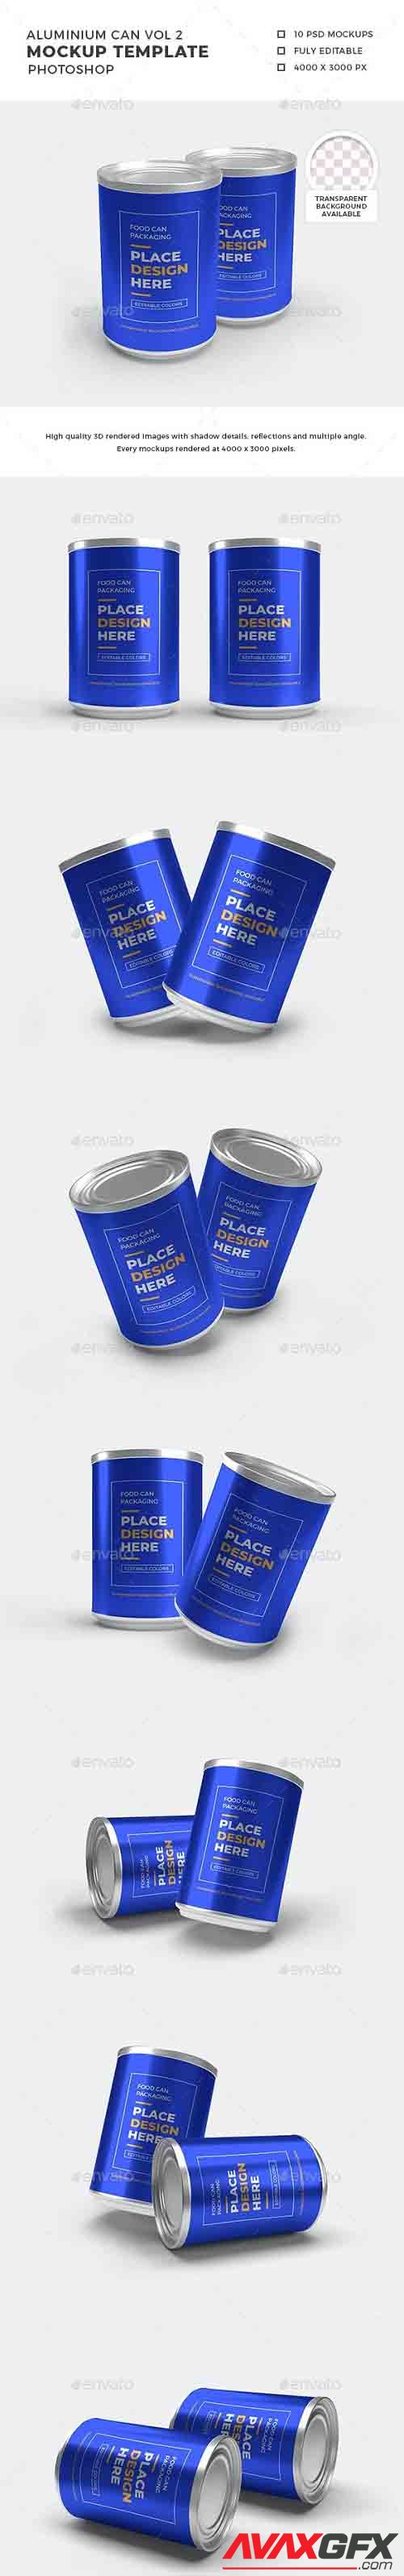 Aluminium Food Can Mockup Set - 32368774 - 1392677 - 3D Template